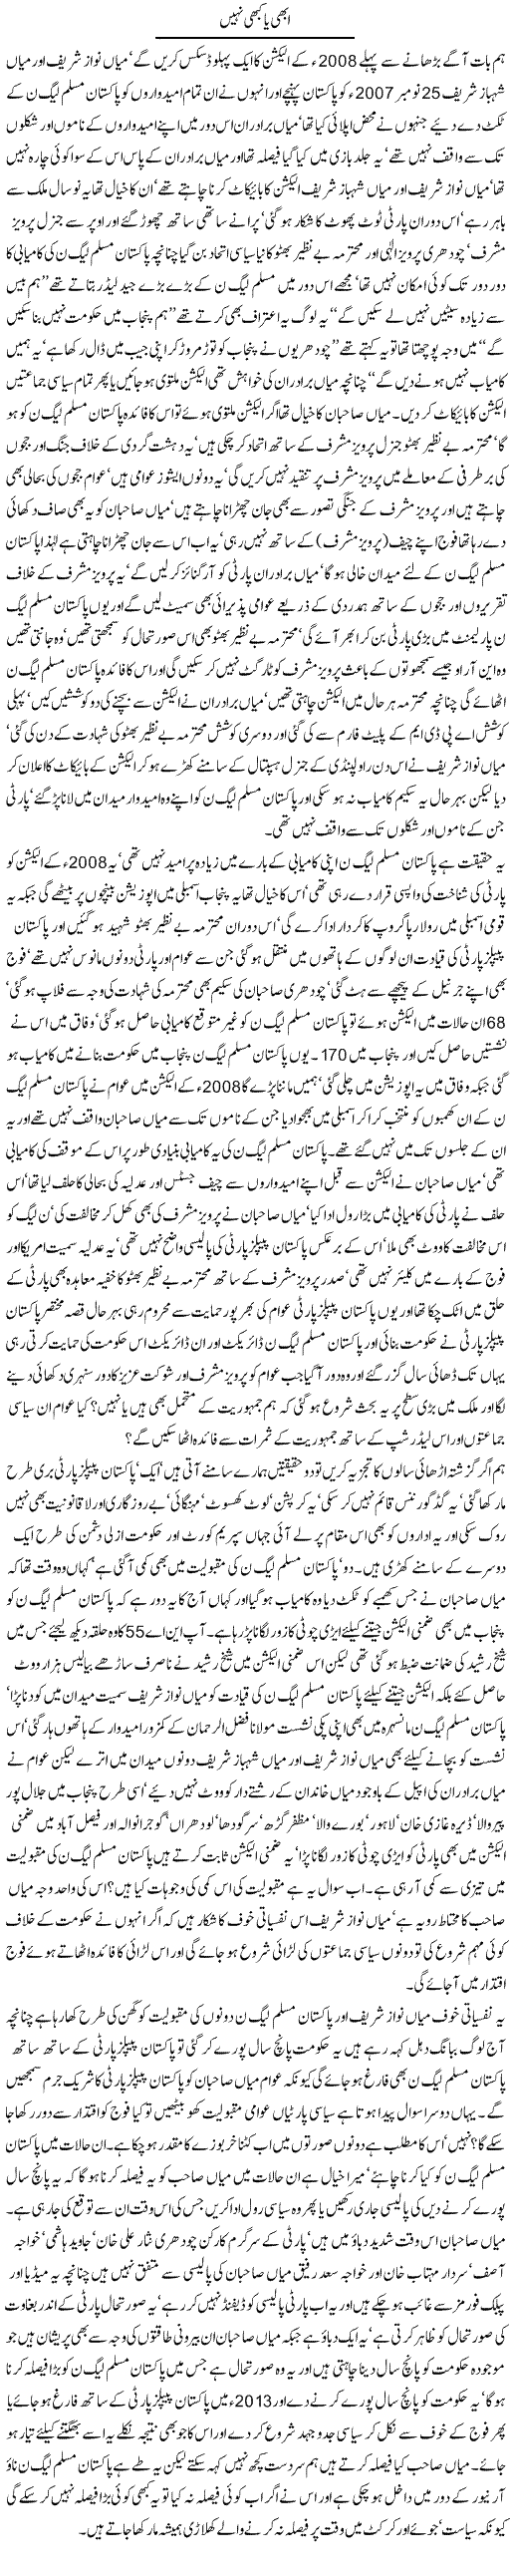 Abhi ya kabhi nahi Express Column Javed Chaudhry 1 July 2010